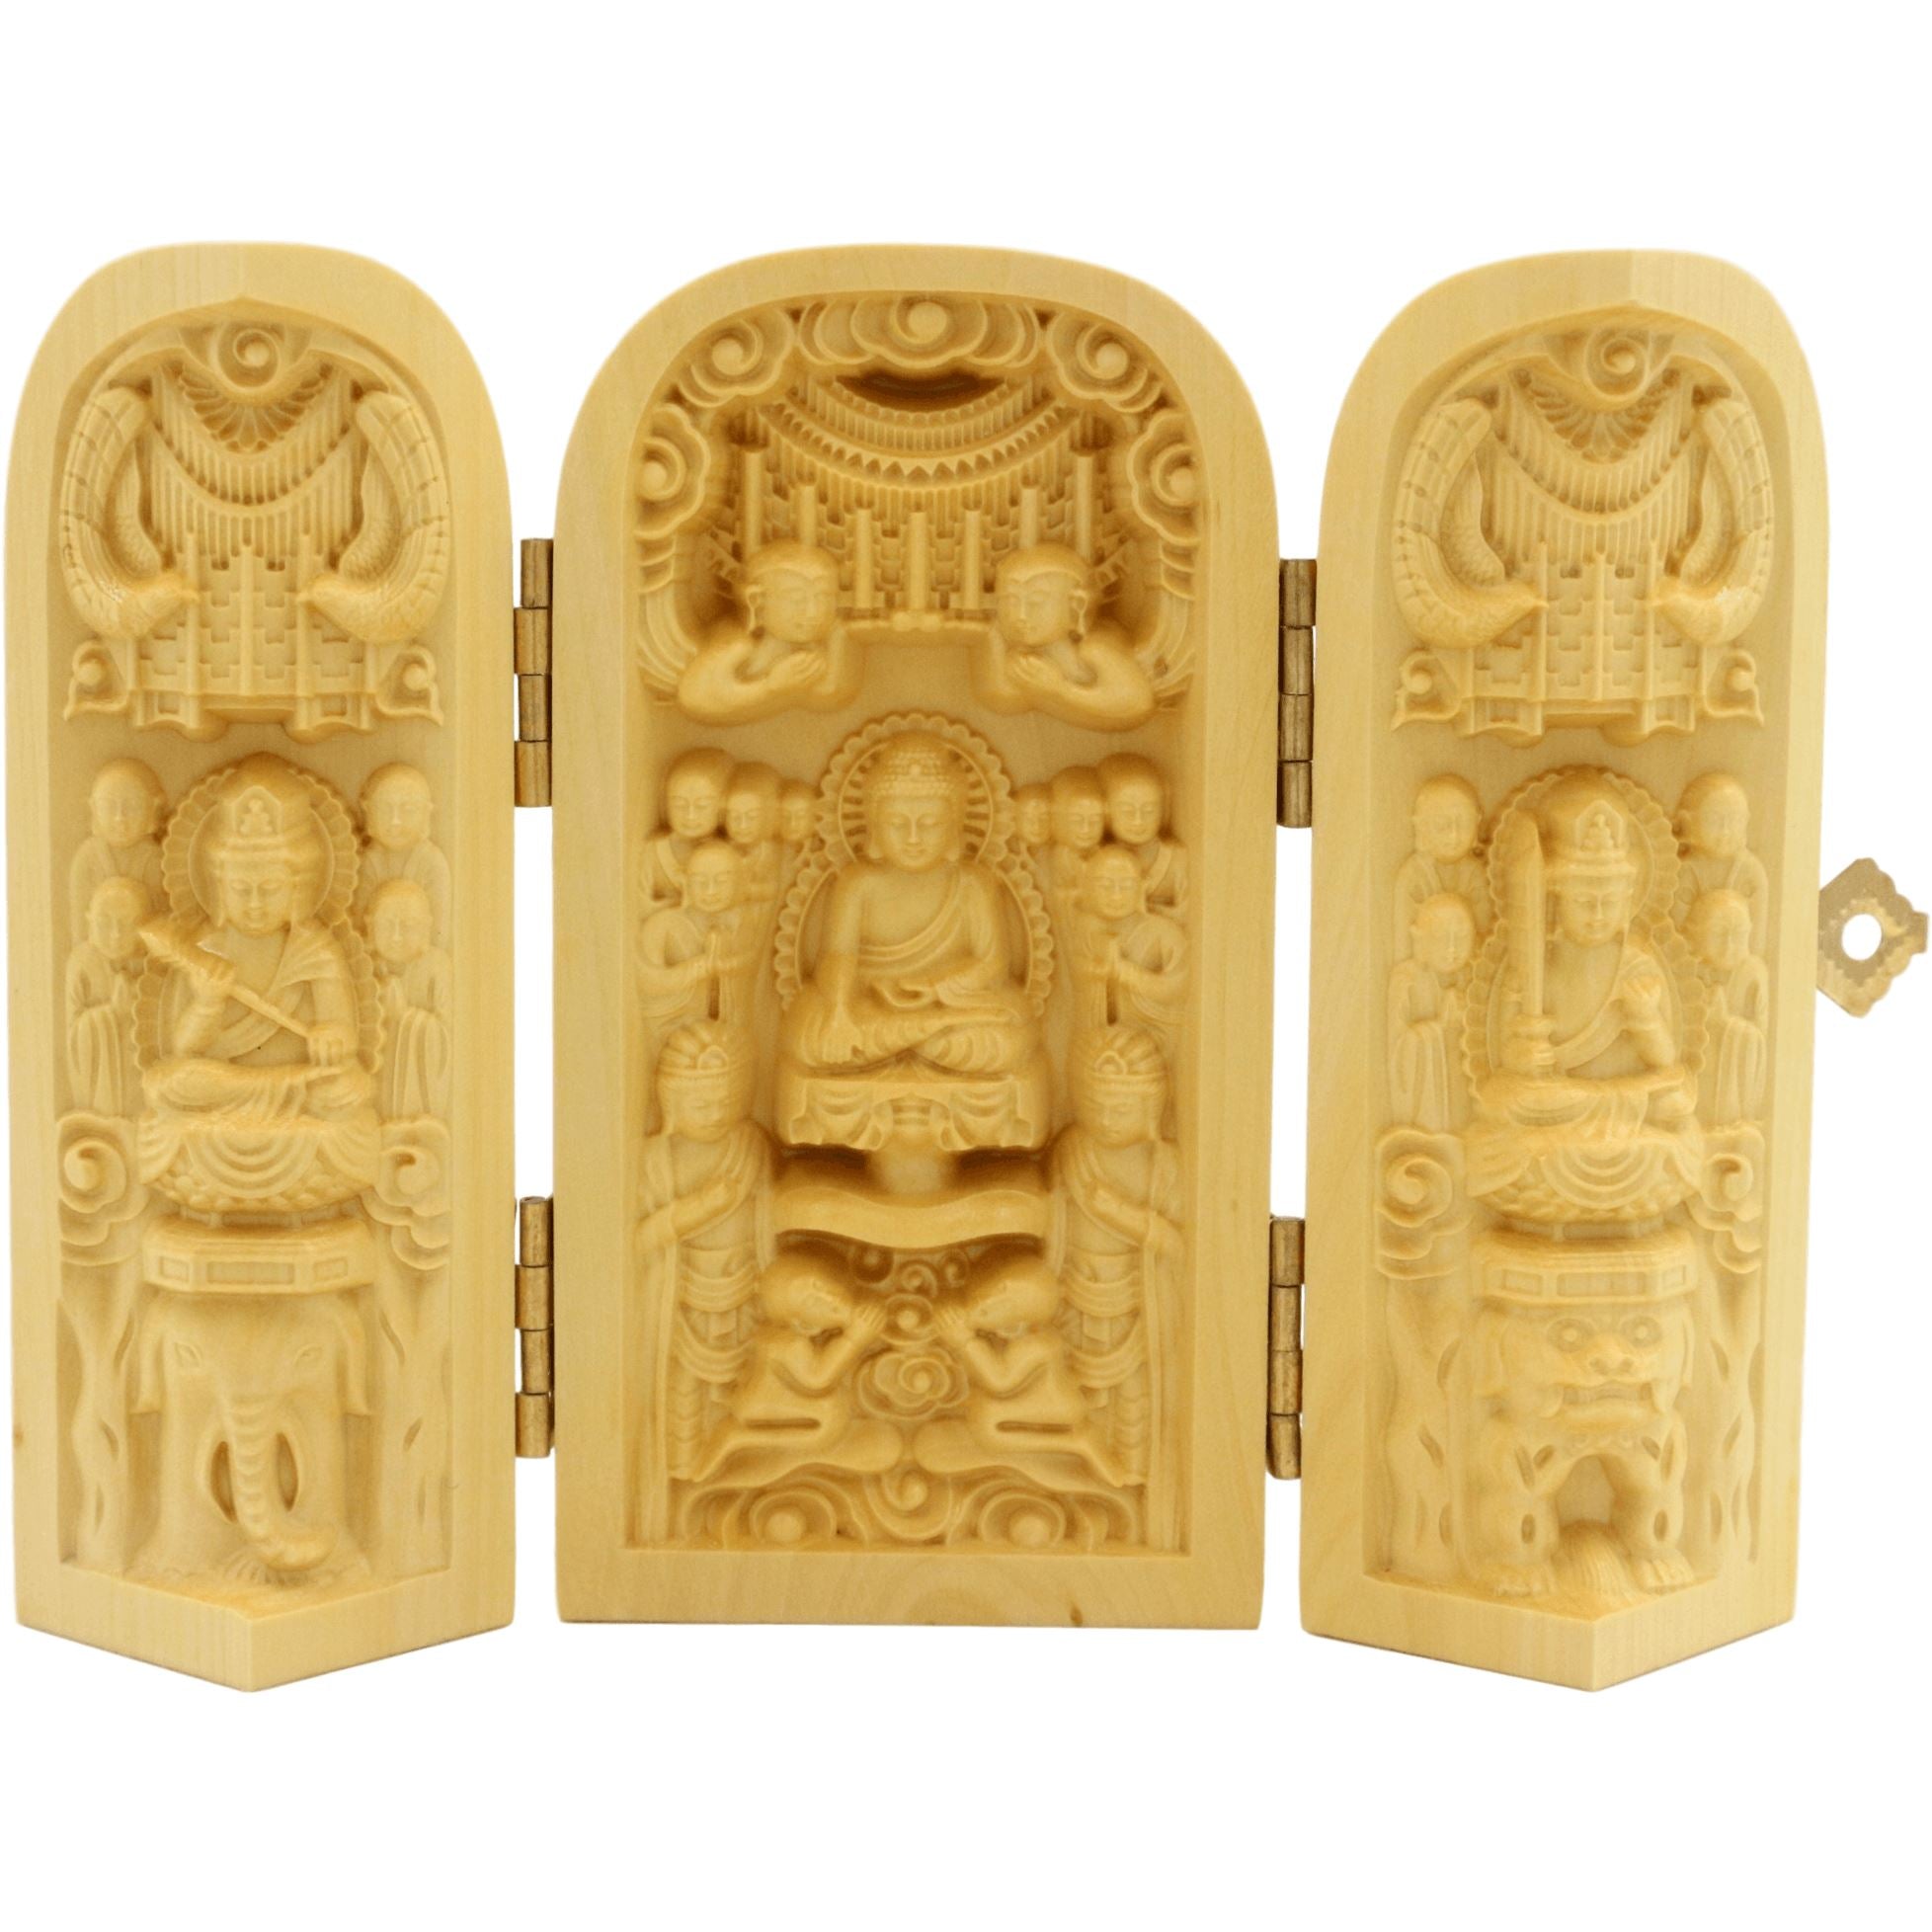 Conjunto de 3 estatuillas artesanales de madera - Buda Amitabha y Bodhisattva - Diseño 5